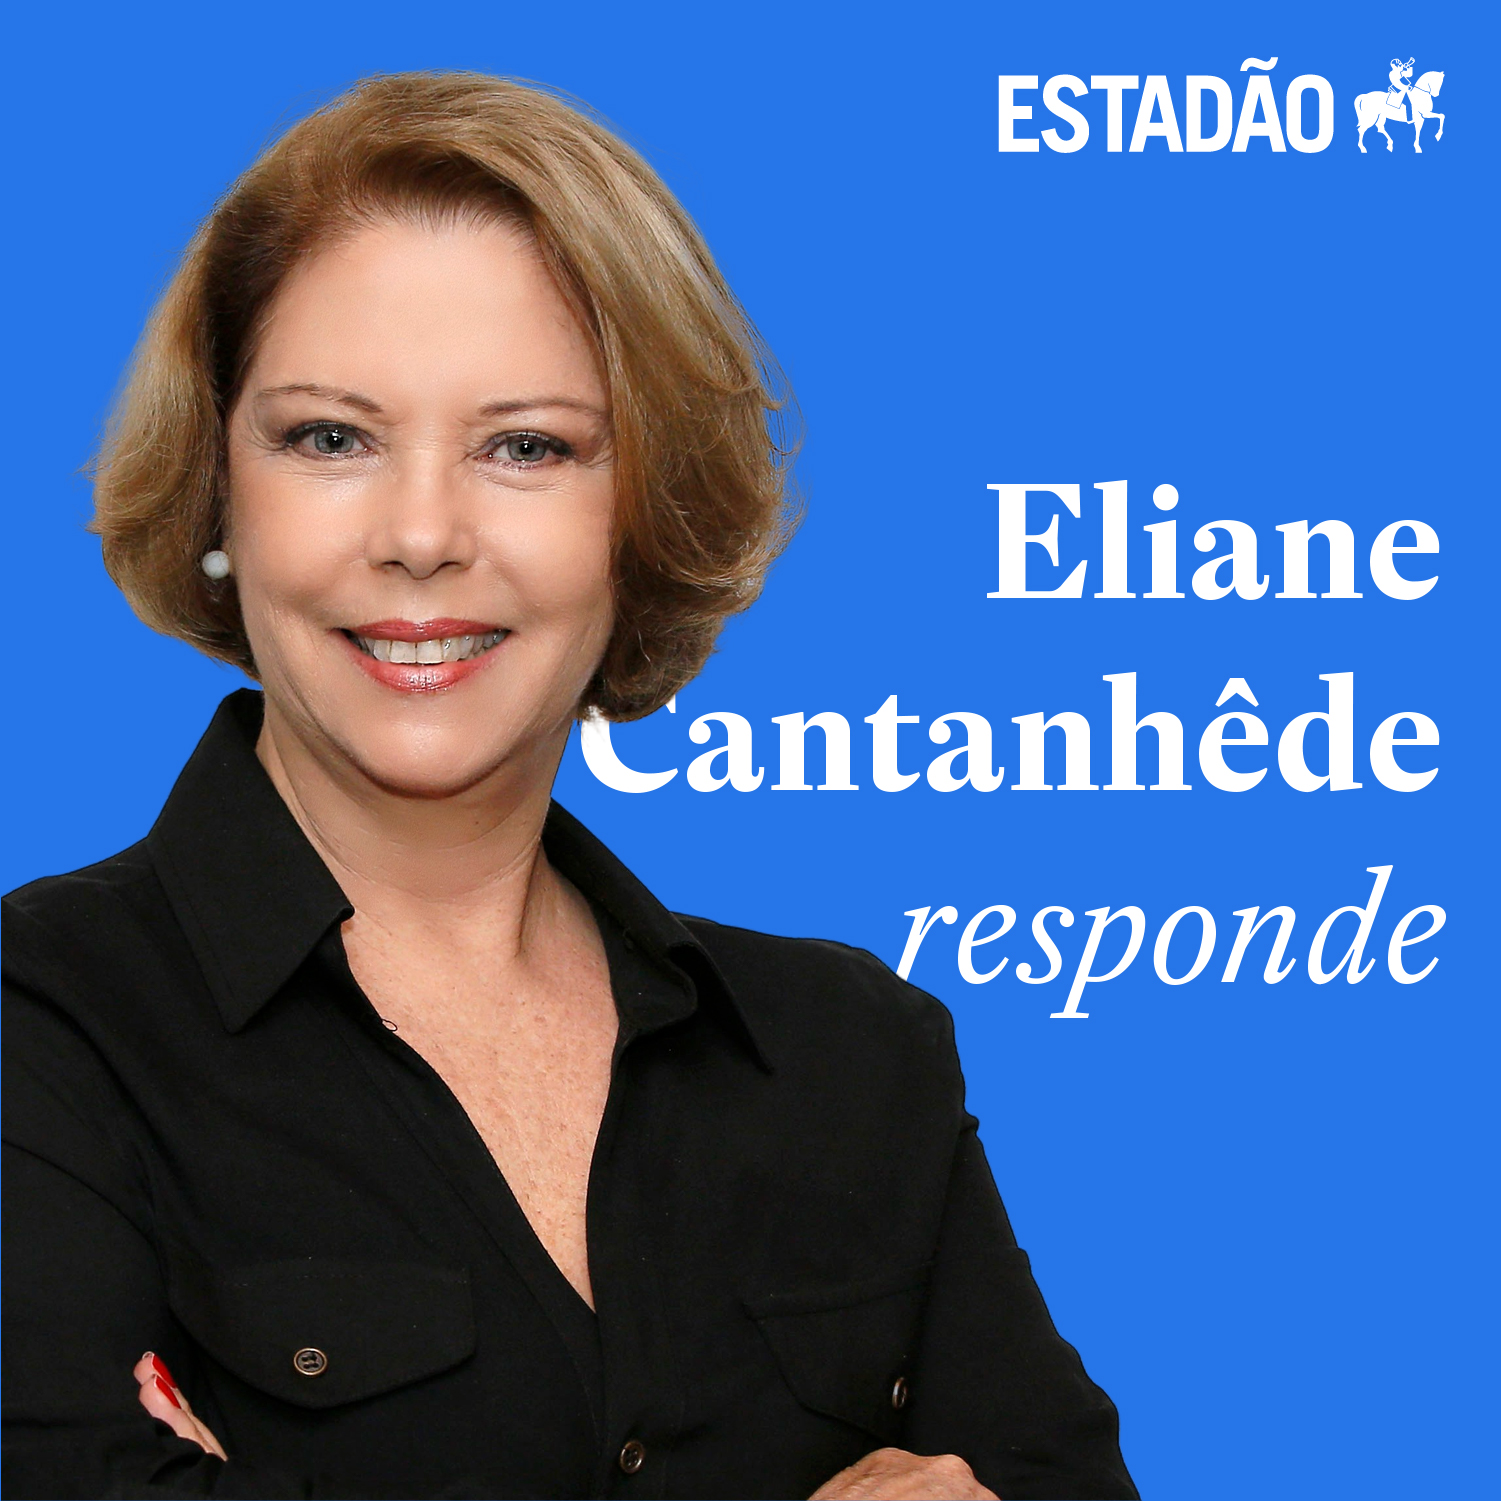 Eliane sobre falas desnecessárias: “O governo continua alimentando a CPI”